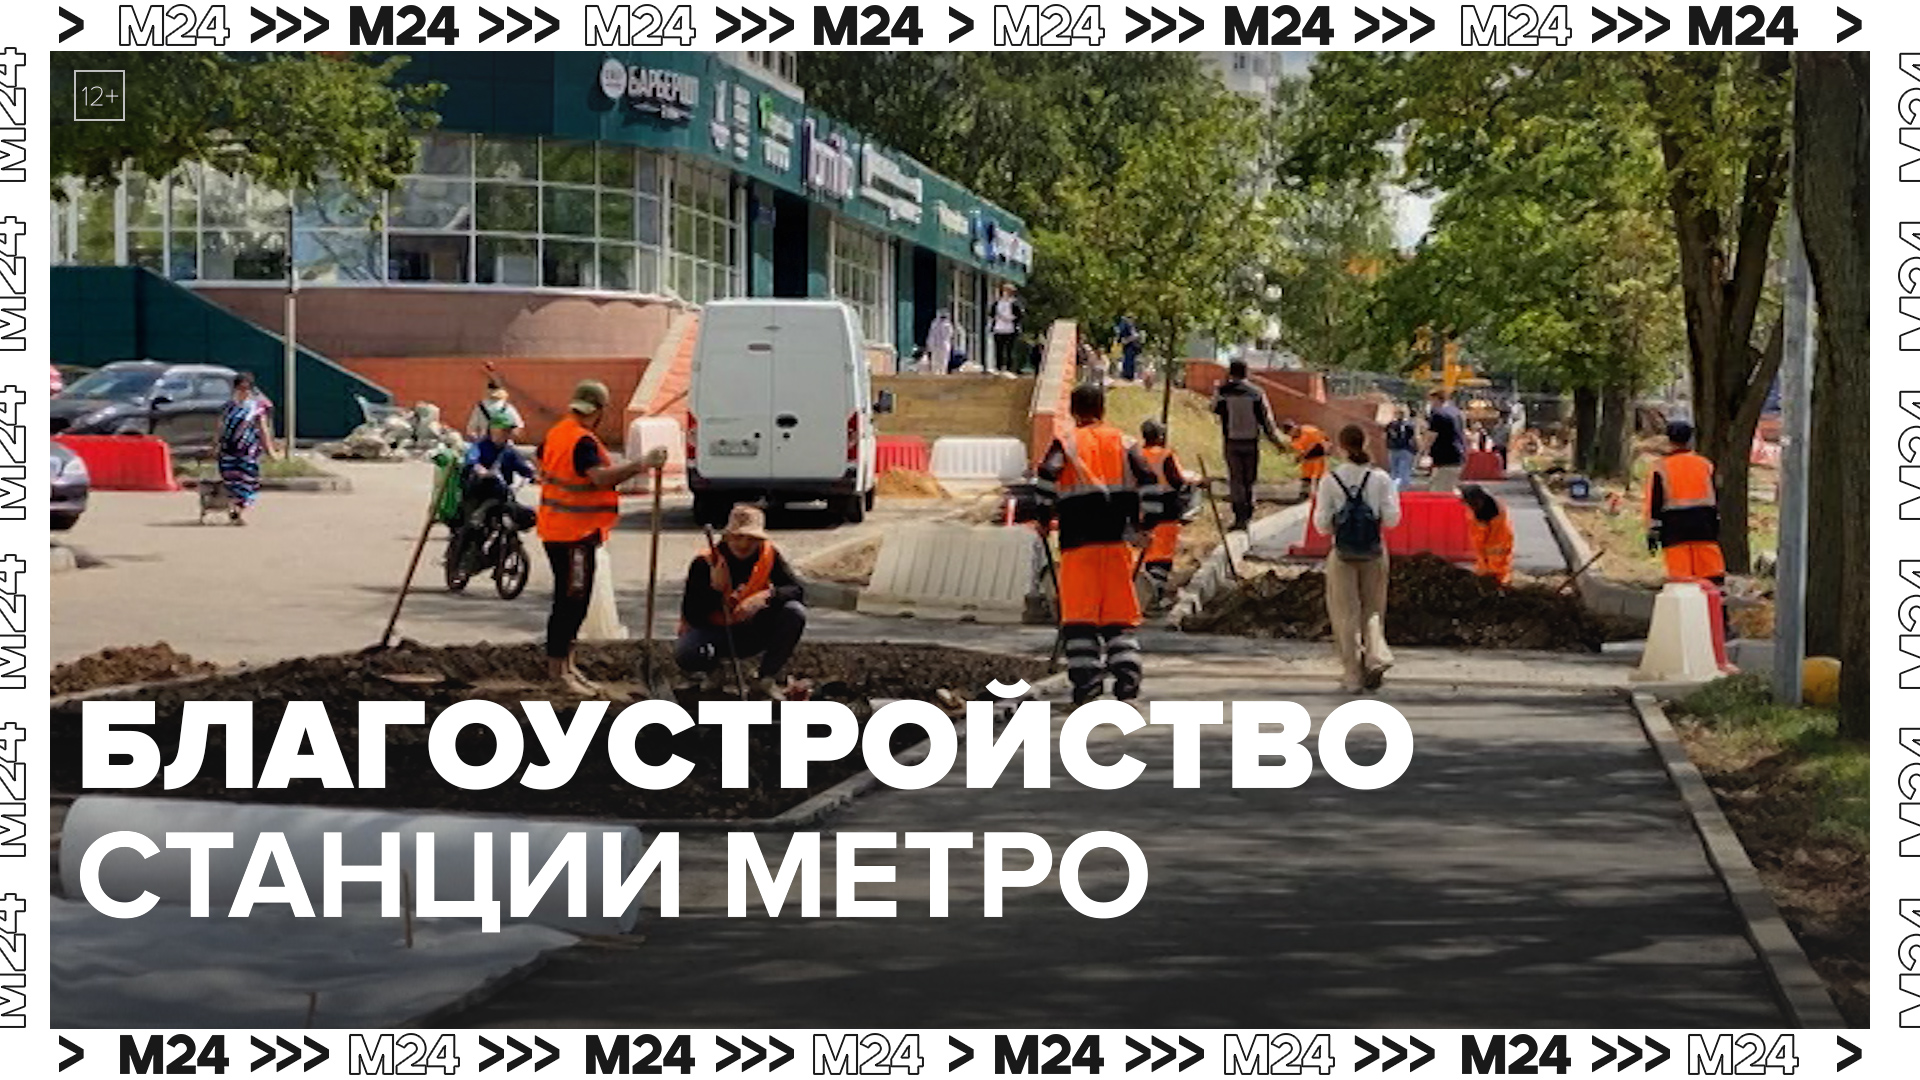 Благоустройство станции метро — Москва24|Контент